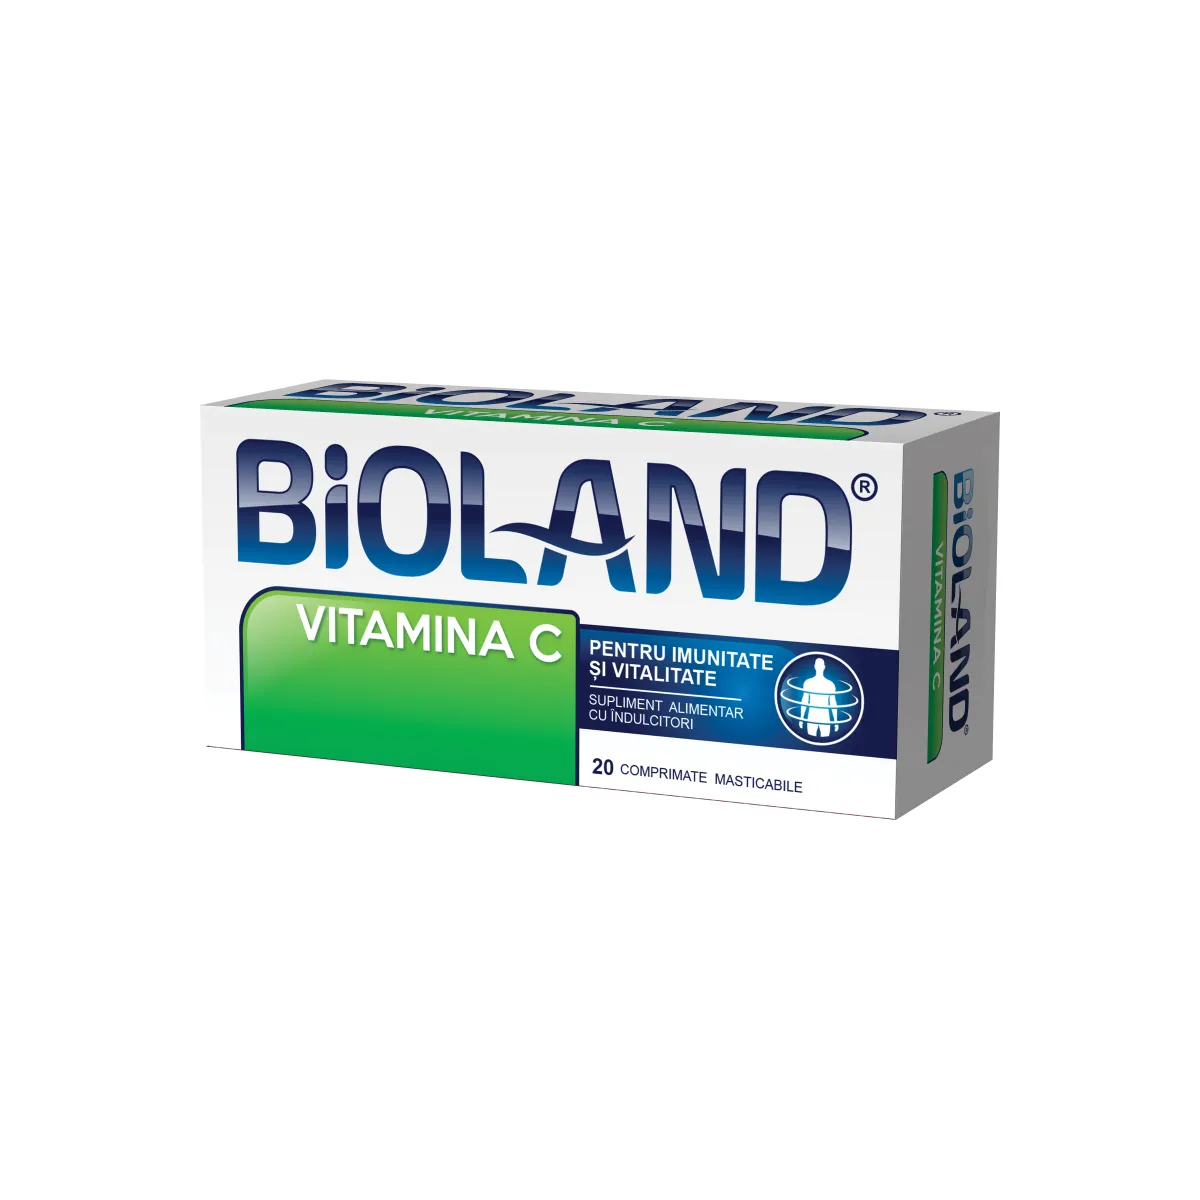 Vitamina C simpla Bioland, 20 comprimate masticabile, Biofarm